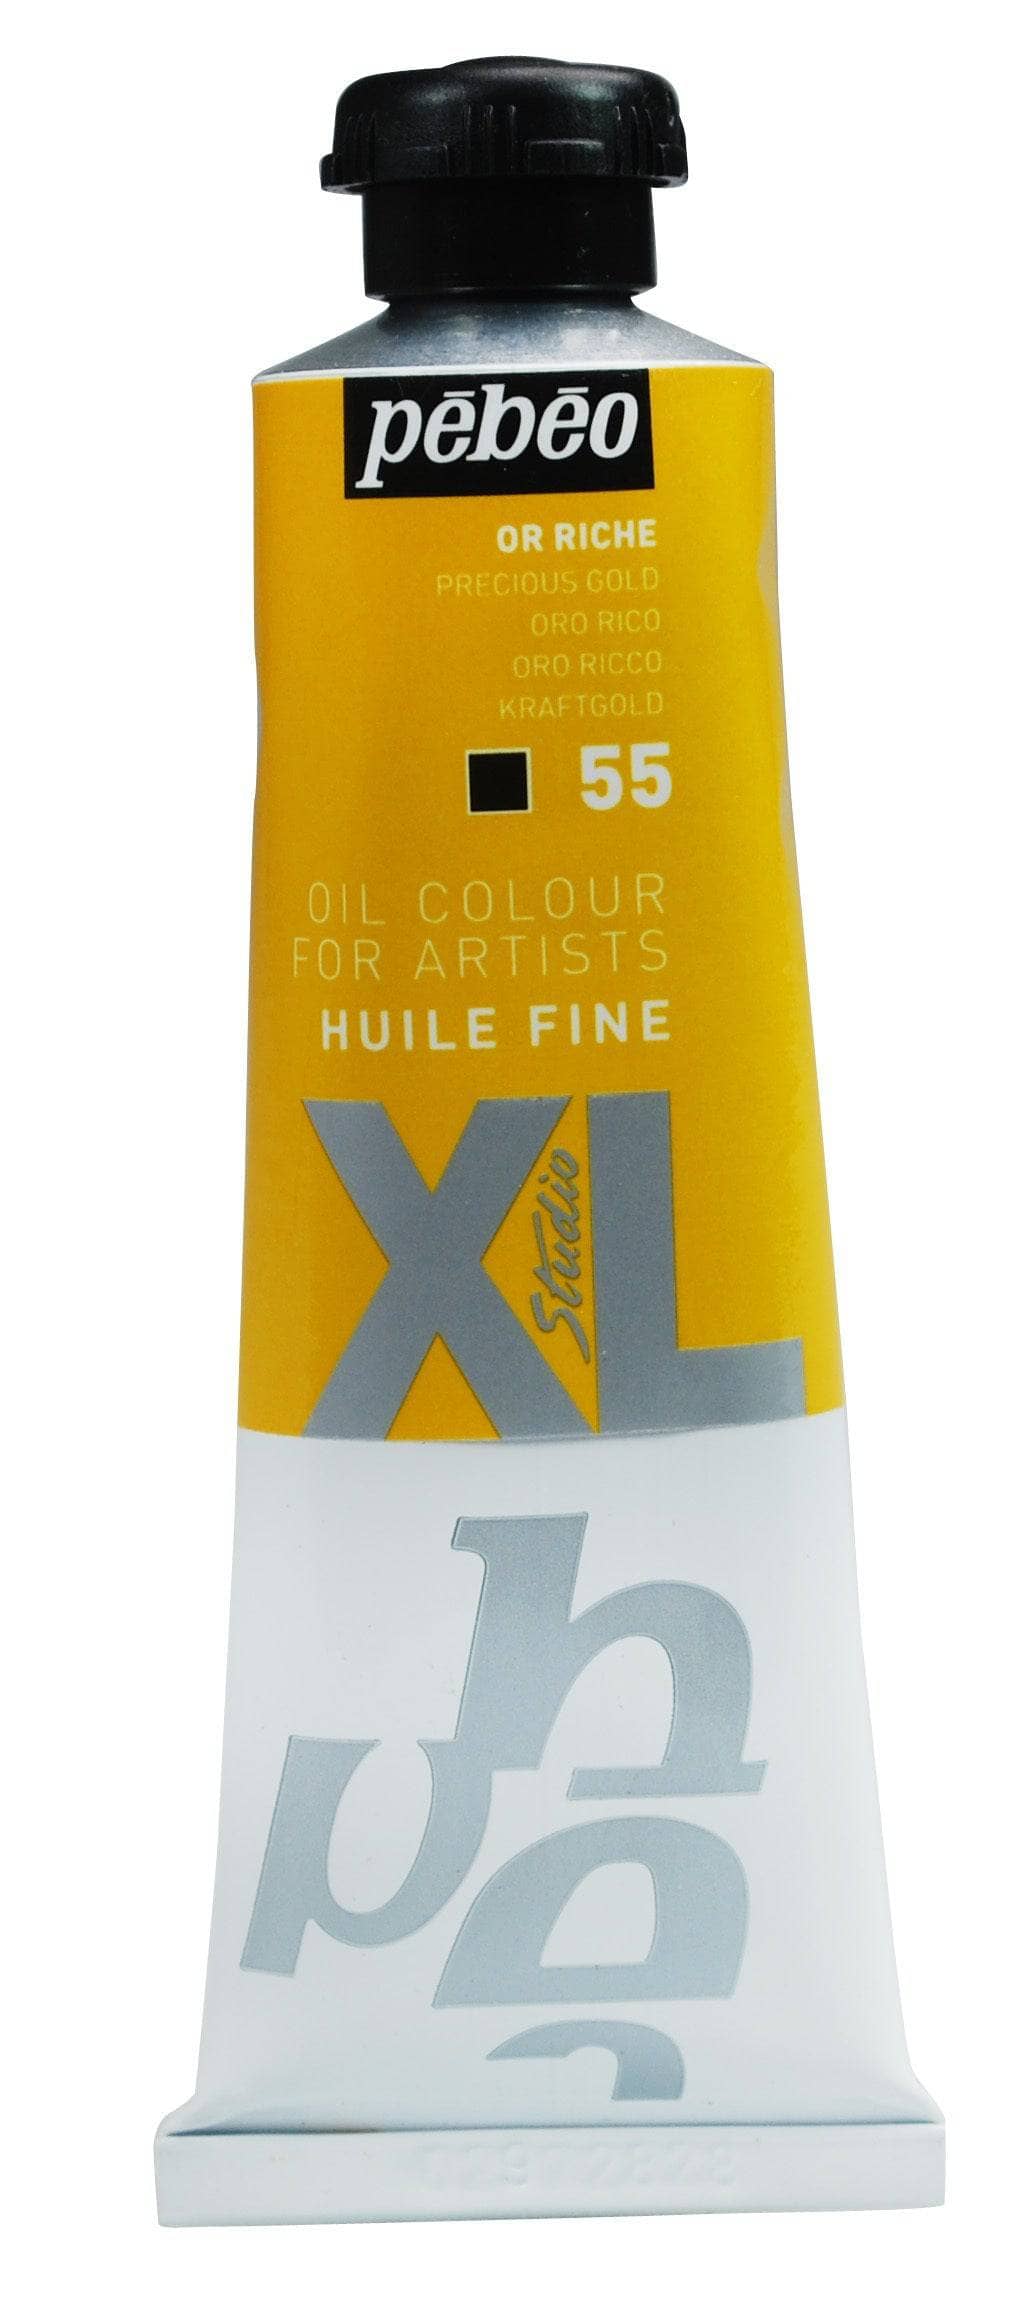 Huile fine Studio XL 37ml - Or Riche
PB937055